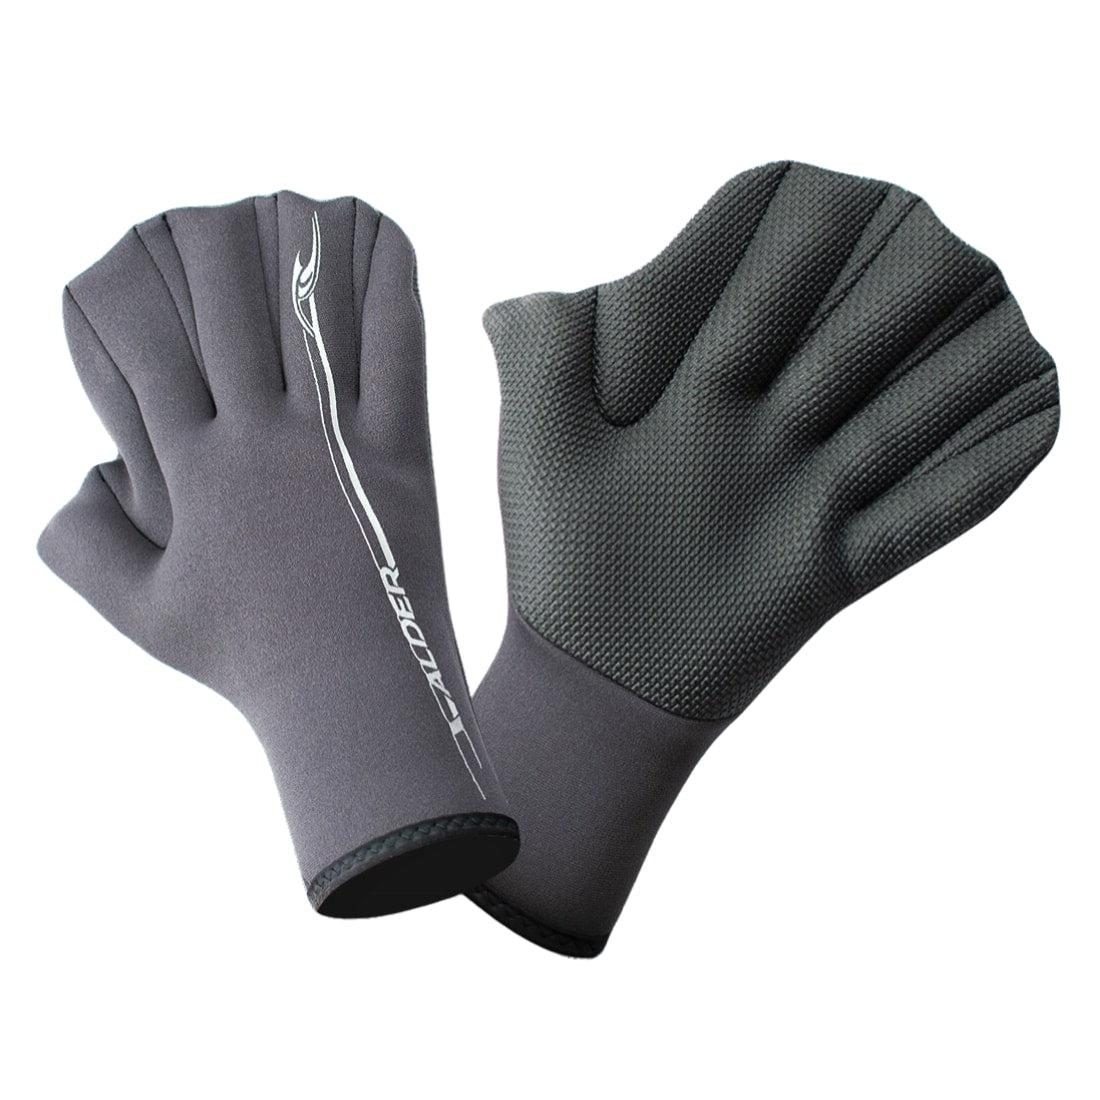 Alder 2mm Paddle Webbed Wetsuit Glove - Black - 5 Finger Wetsuit Gloves by Alder